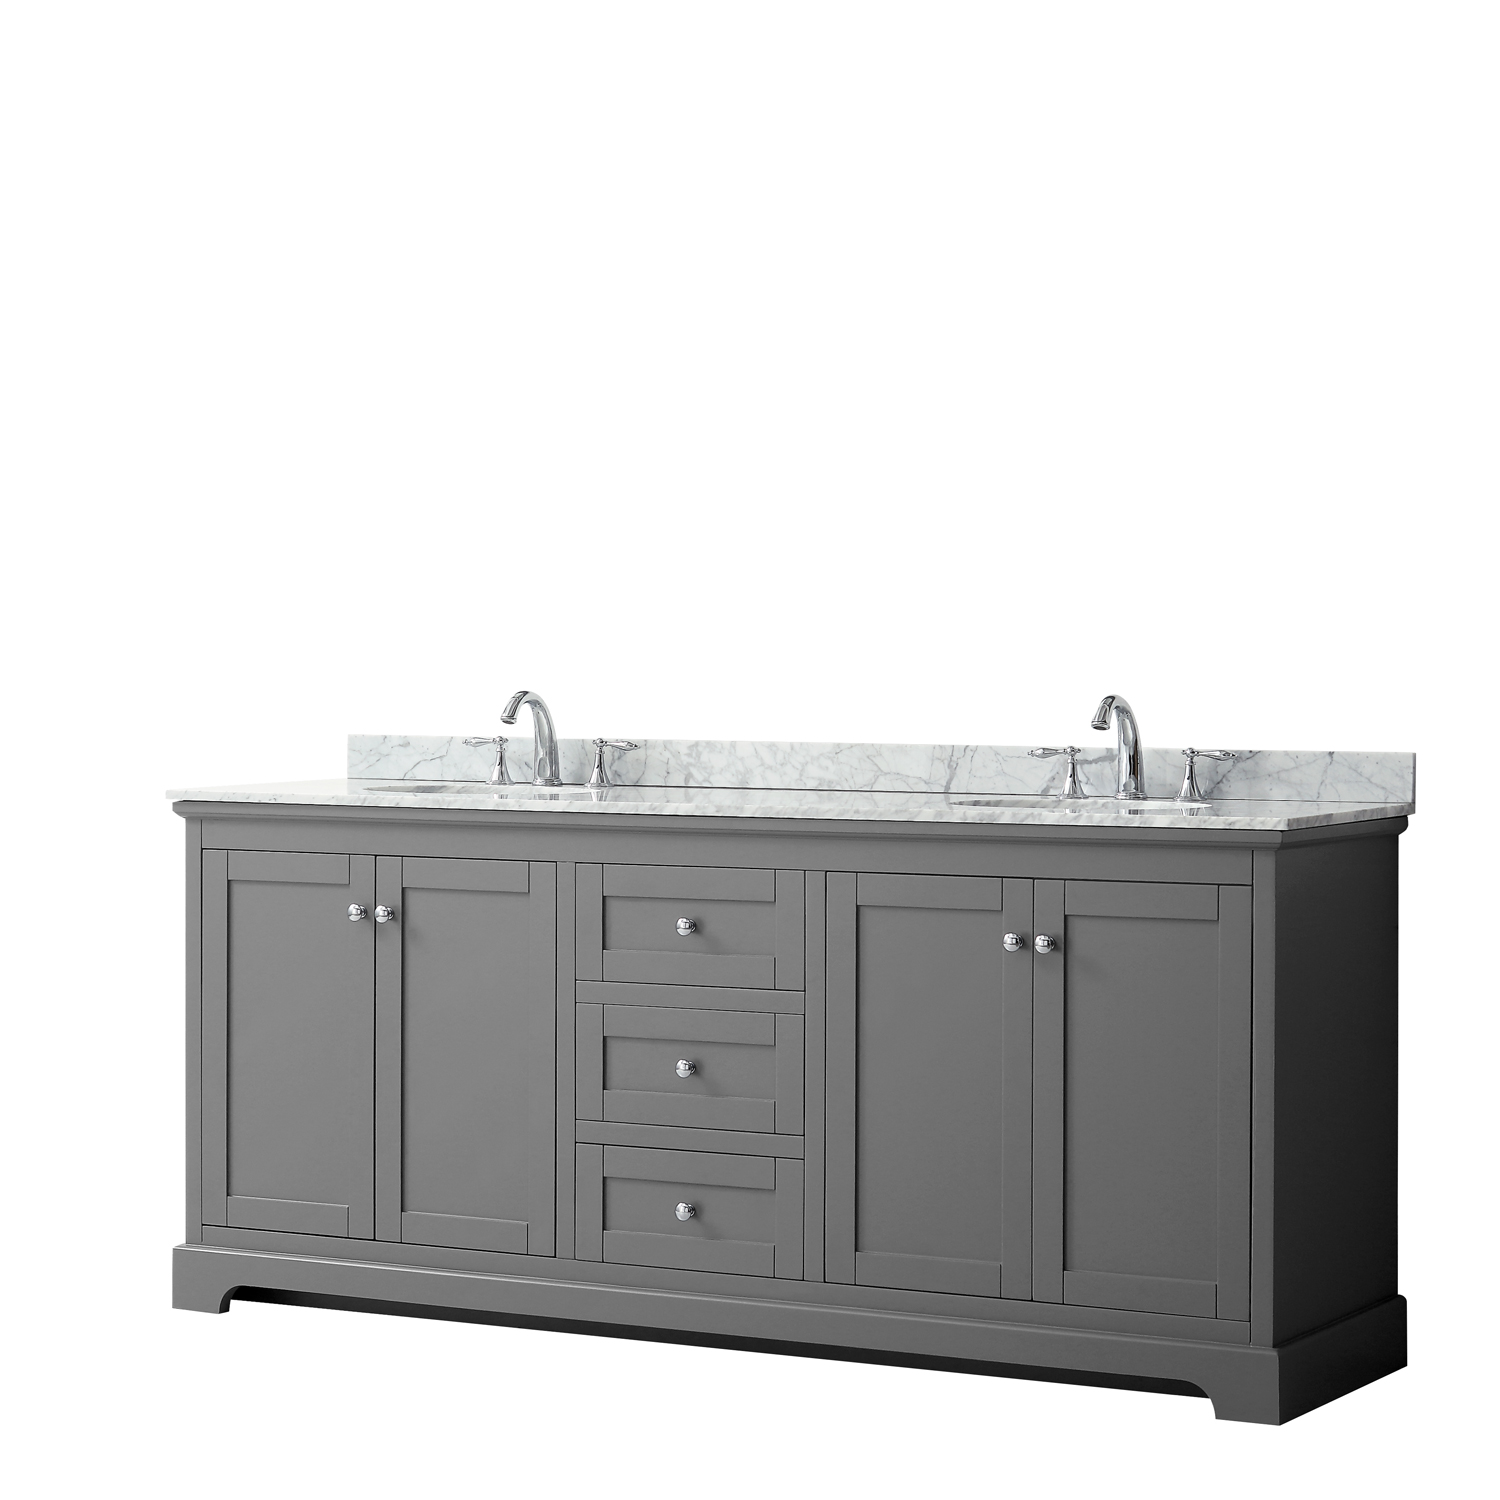 80" Double Bathroom Vanity in Dark Gray, No Countertop, No Sinks, and No Mirror